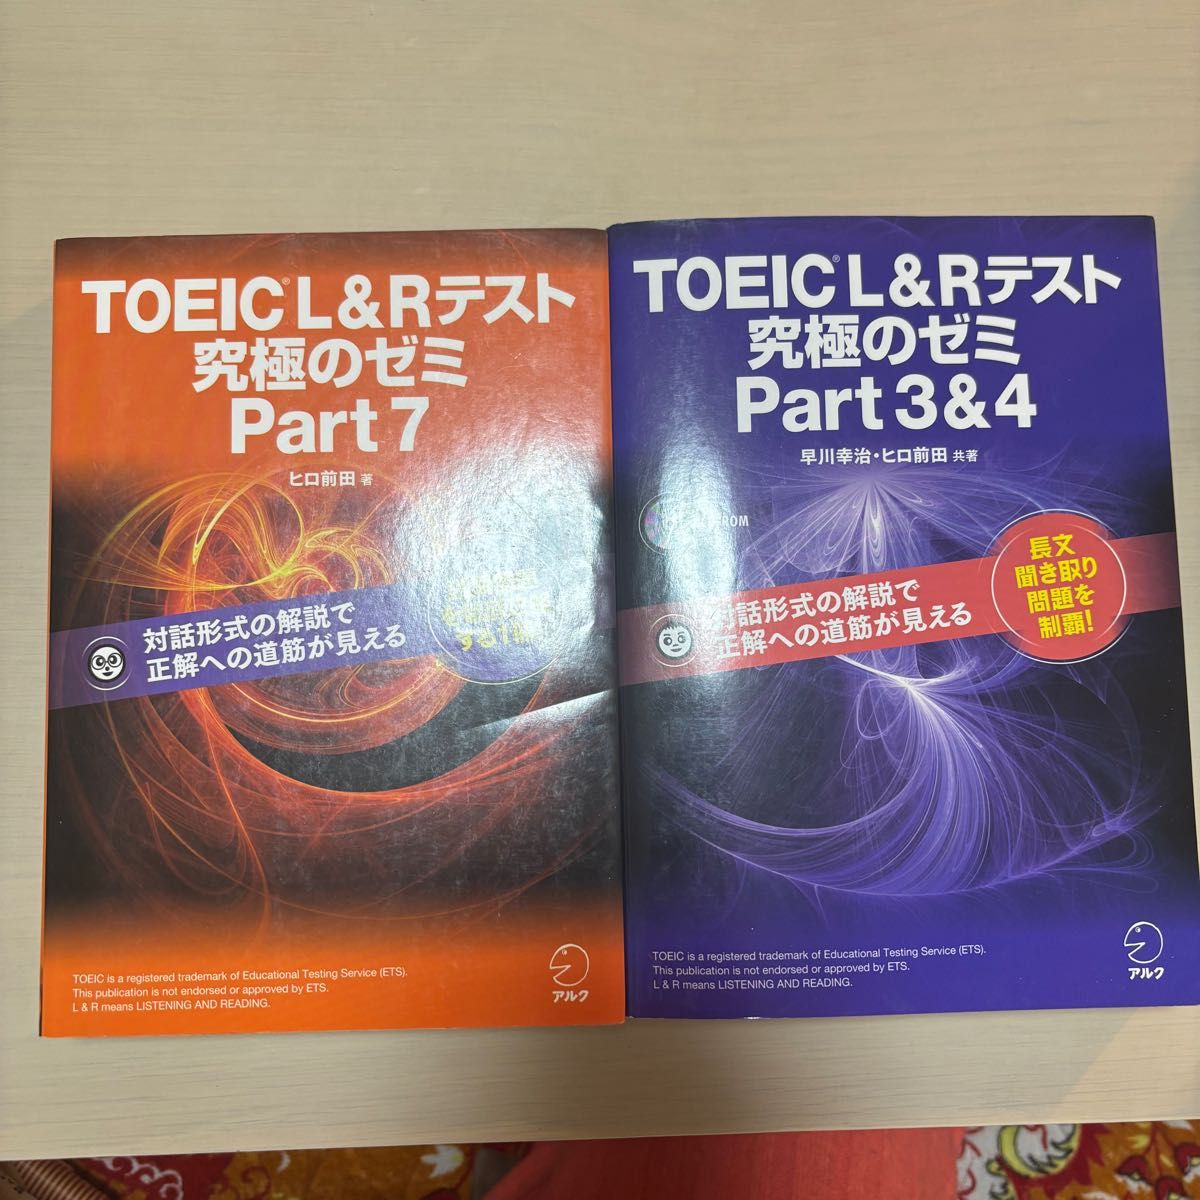 TOEIC L&R テスト 究極のゼミ Part 7、TOEIC(R) L & R テスト 究極のゼミ Part 3 & 4